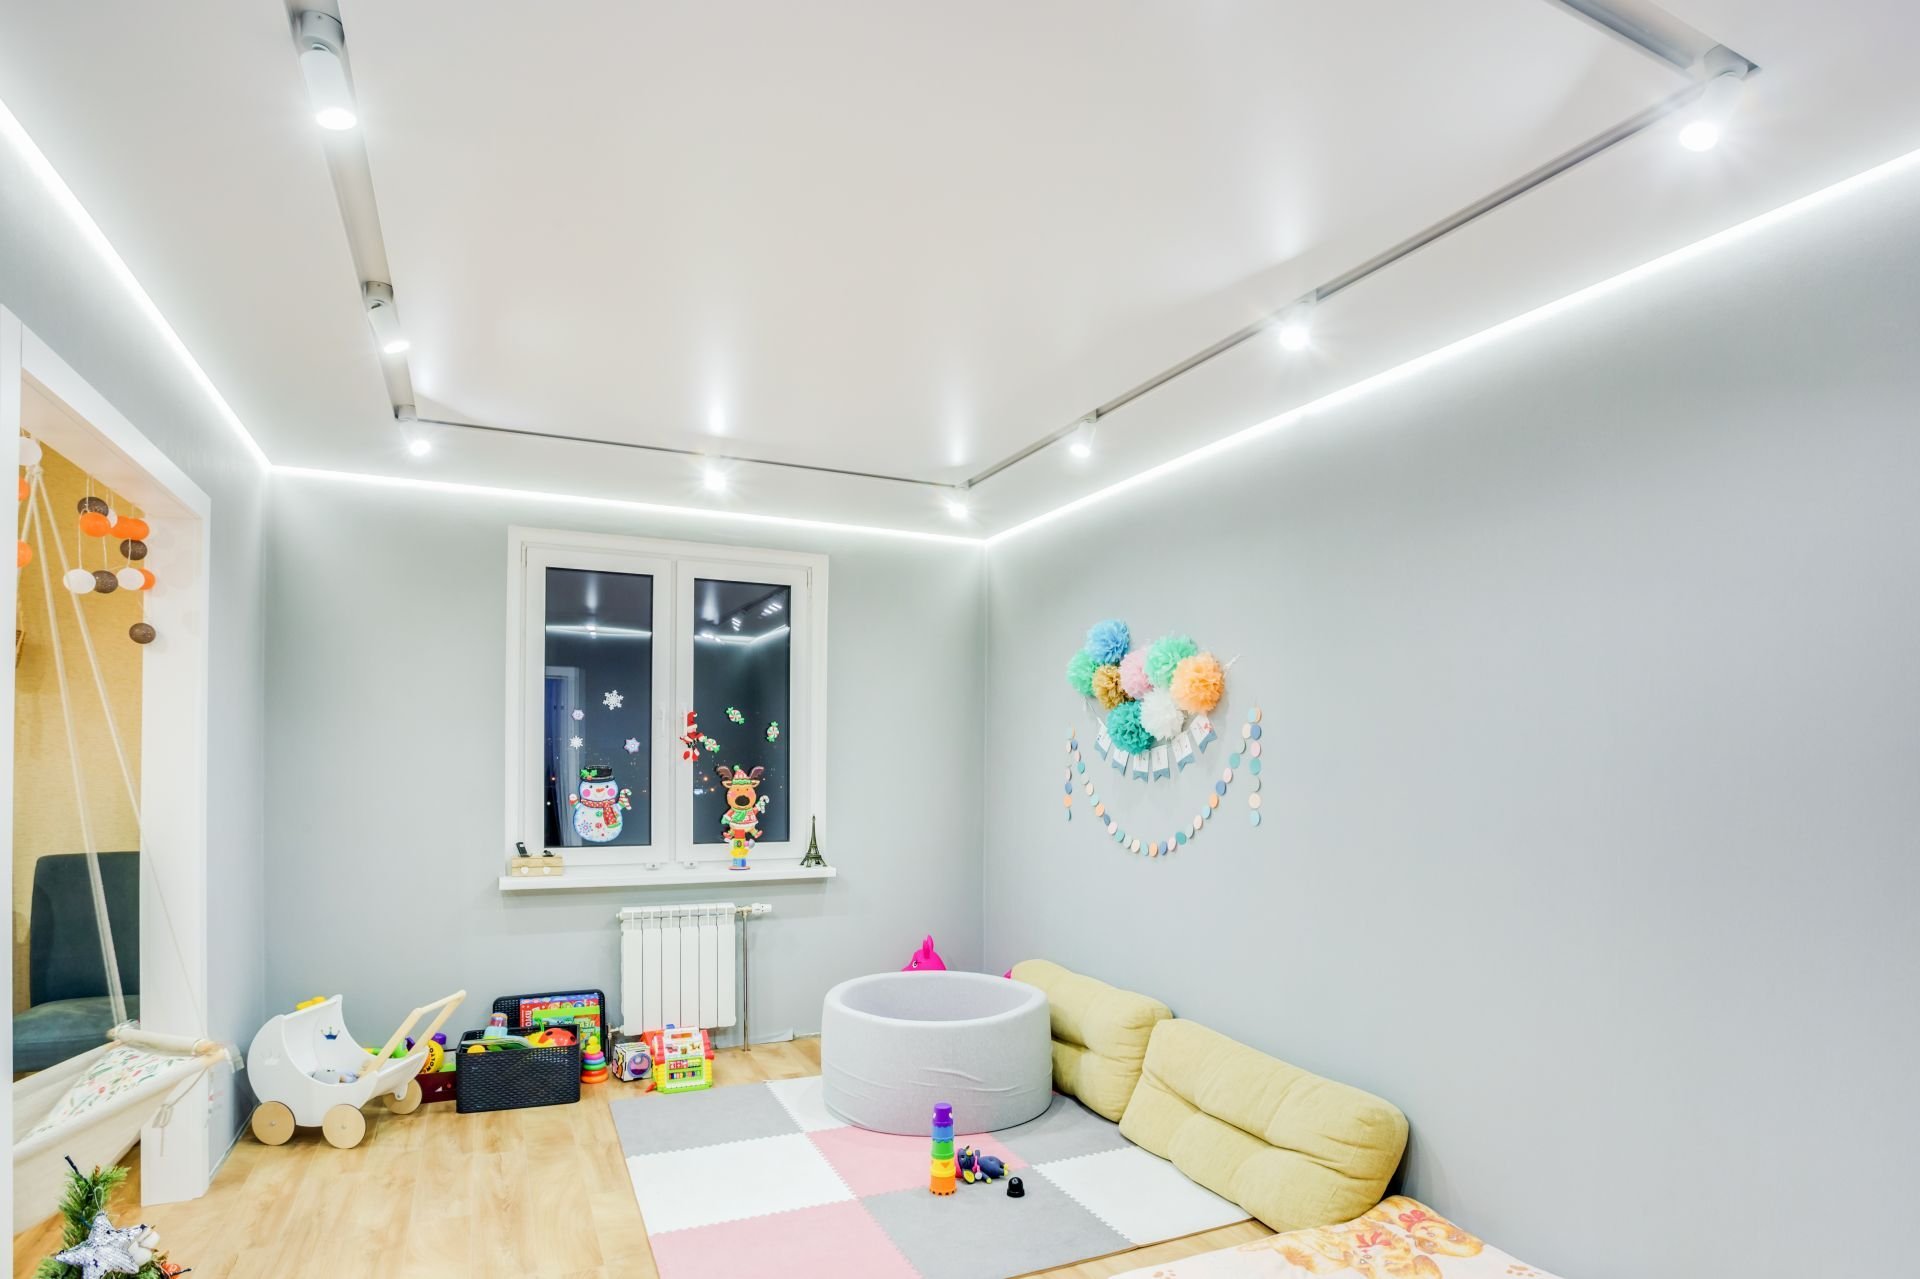 Обустройство детской комнаты — от 0 до 15 лет